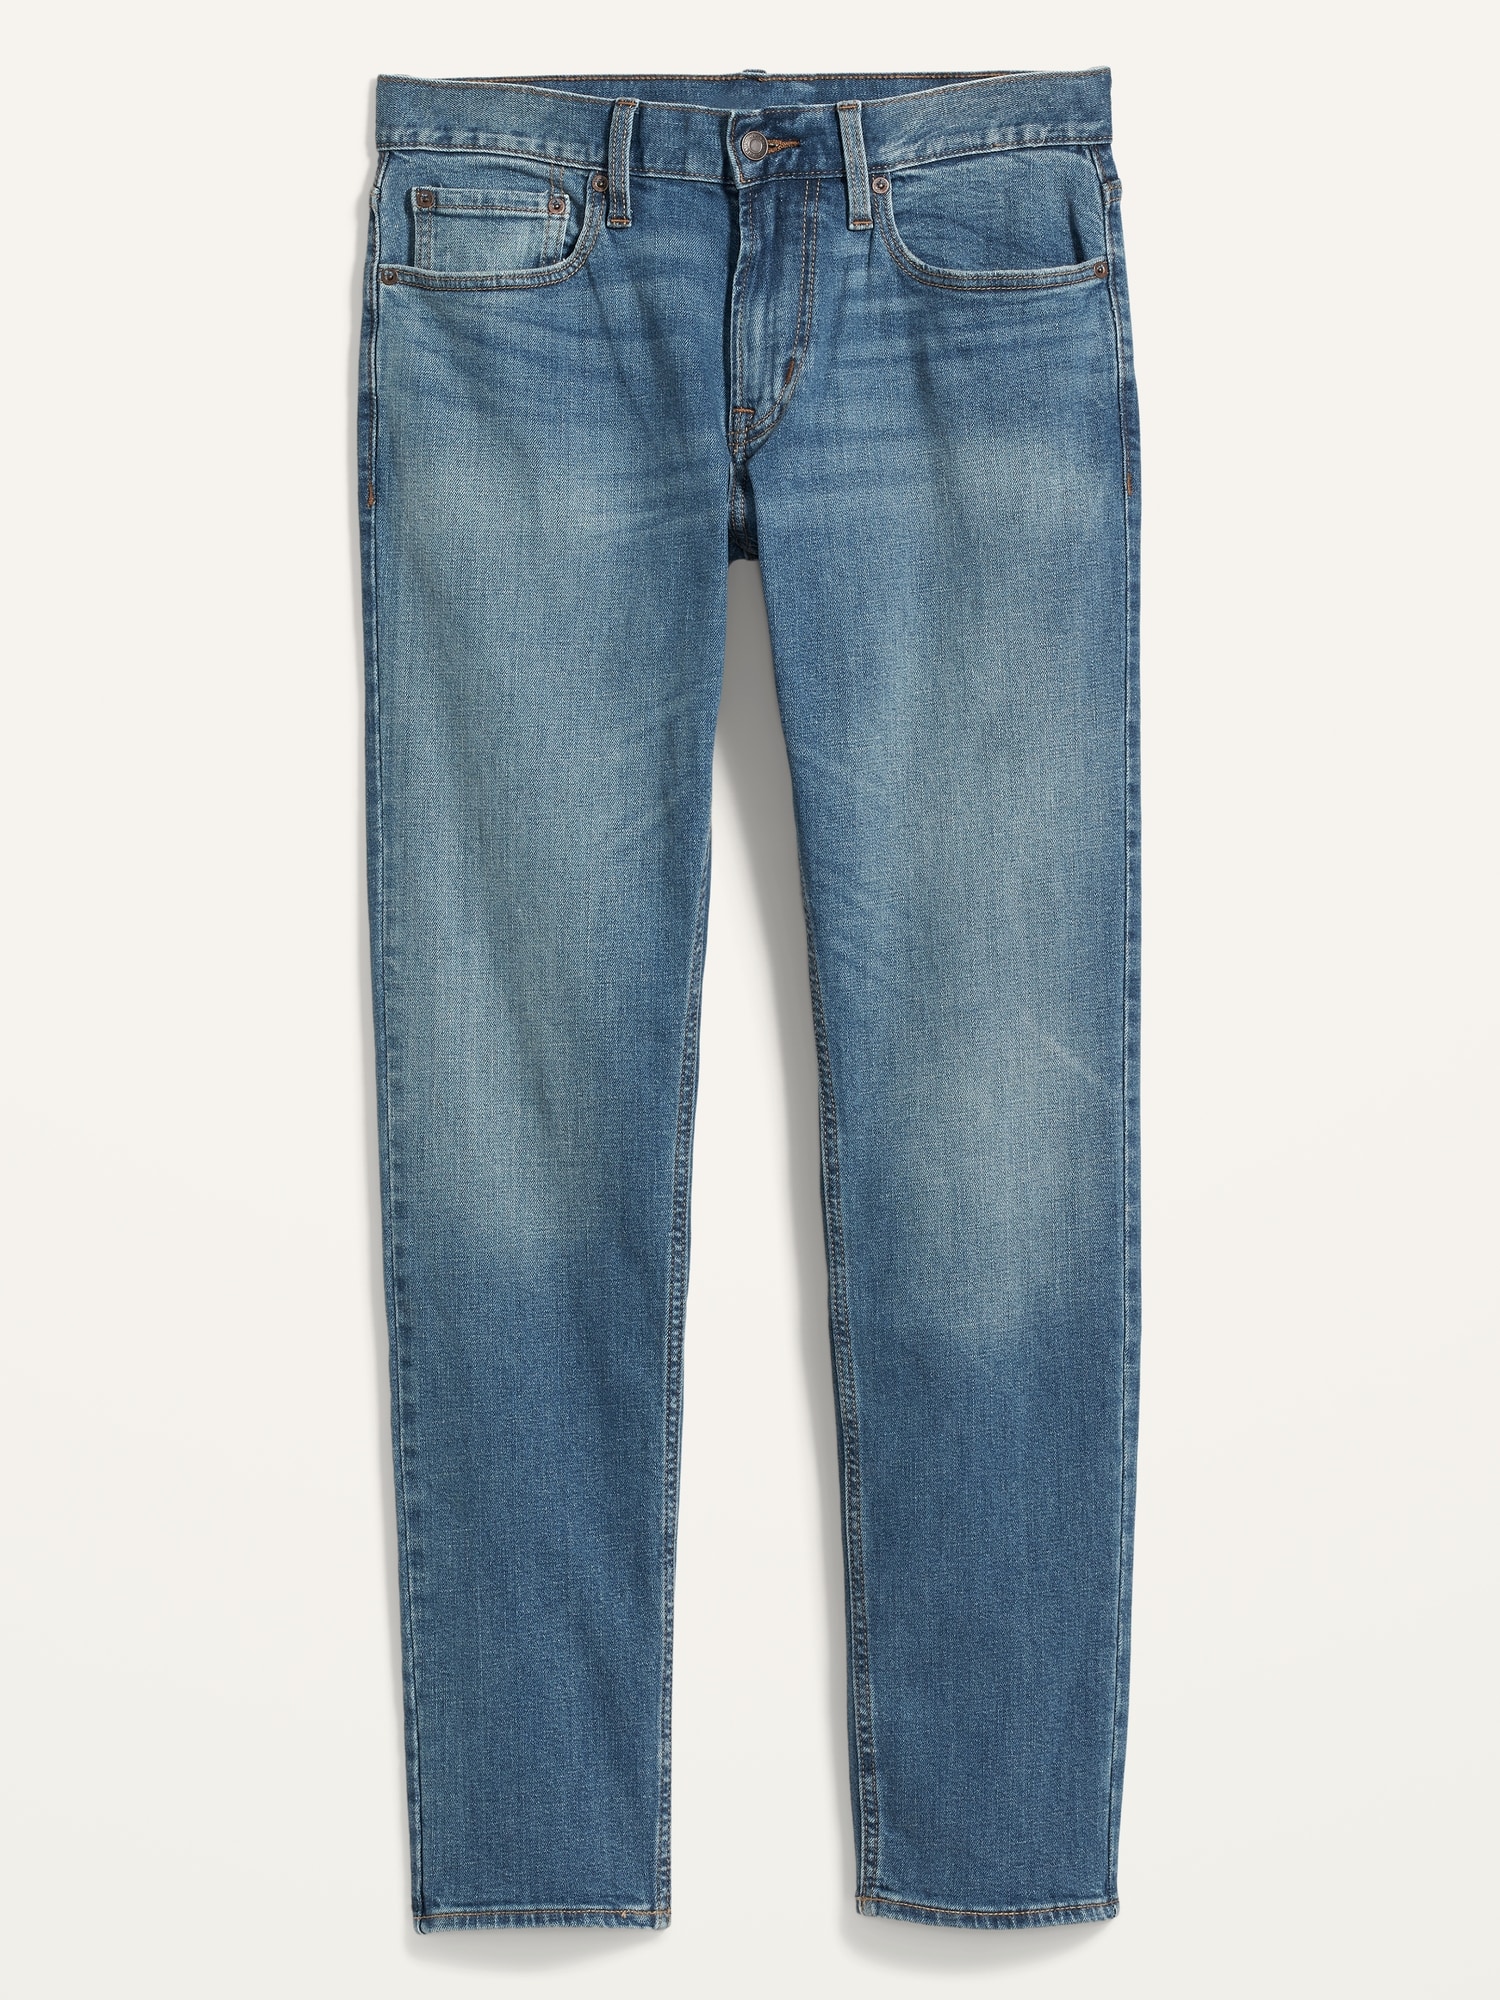 grot uitdrukking Onbemand Slim Built-In-Flex Jeans For Men | Old Navy